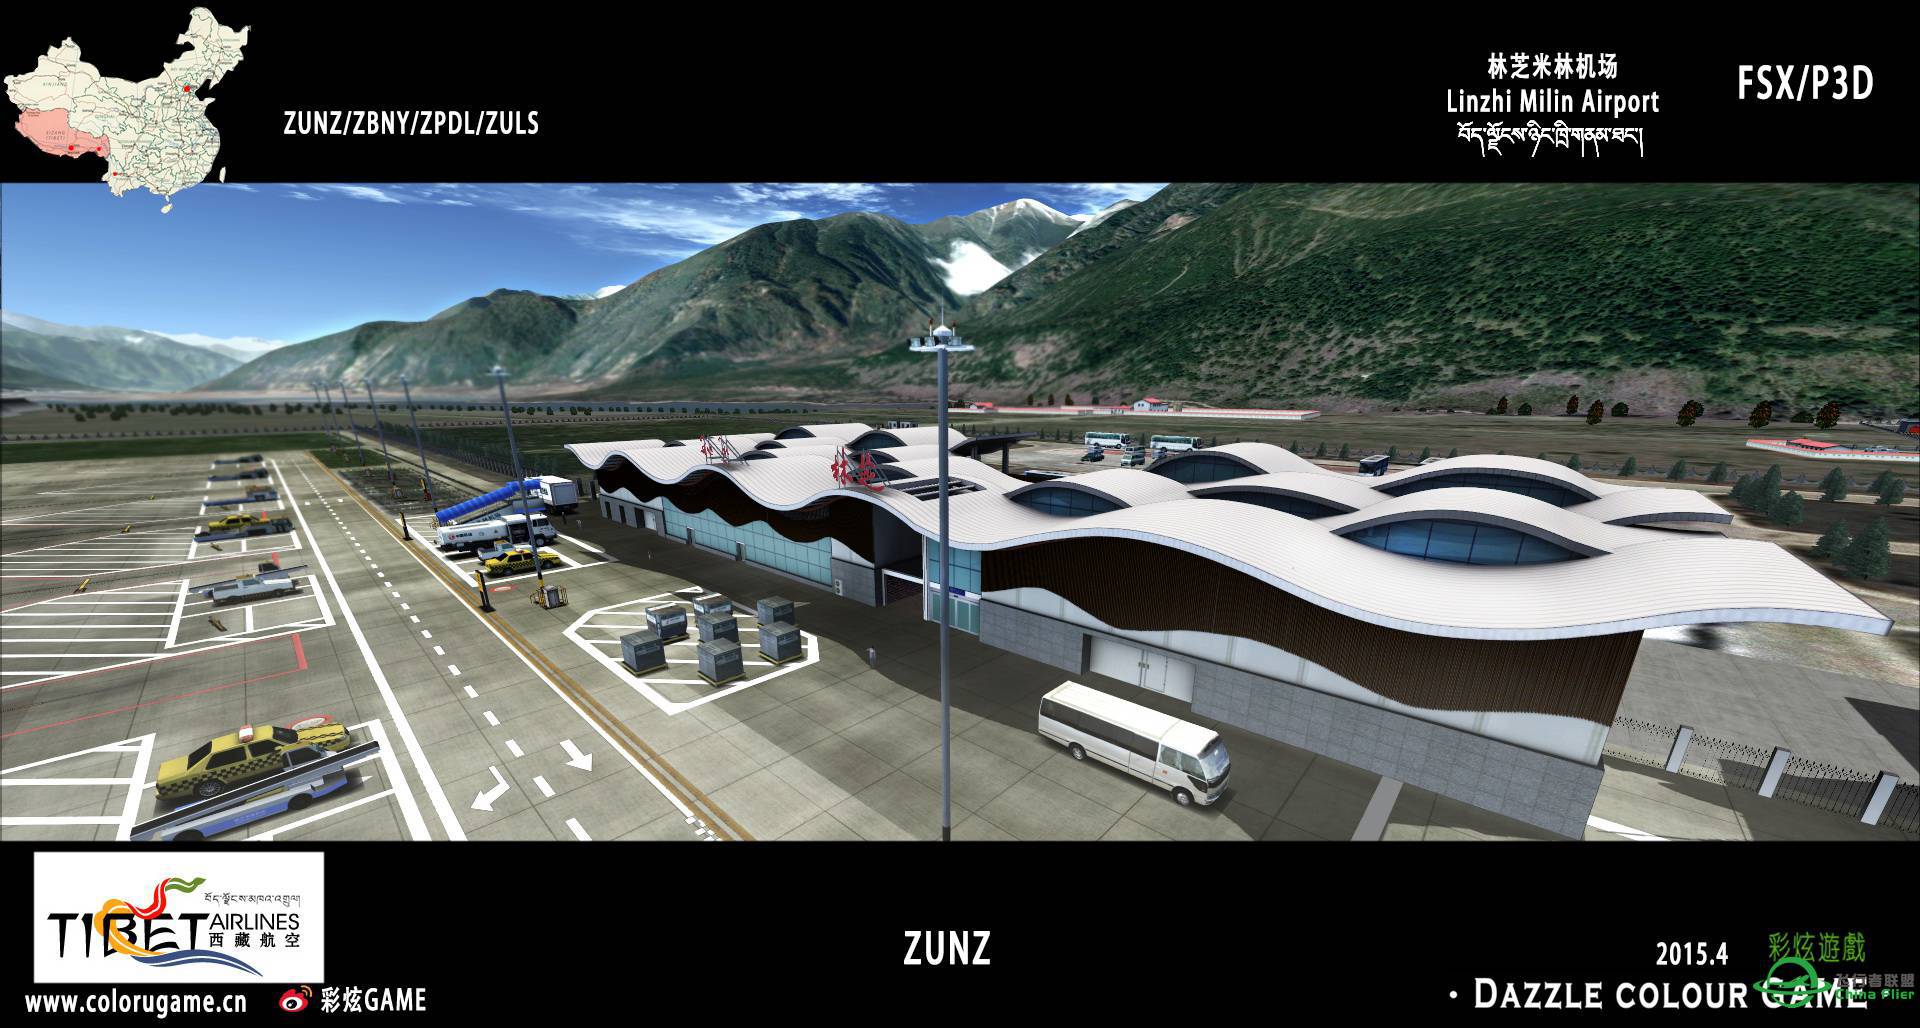 彩炫地景：林芝米林机场（ZUNZ）正式发布！-7294 